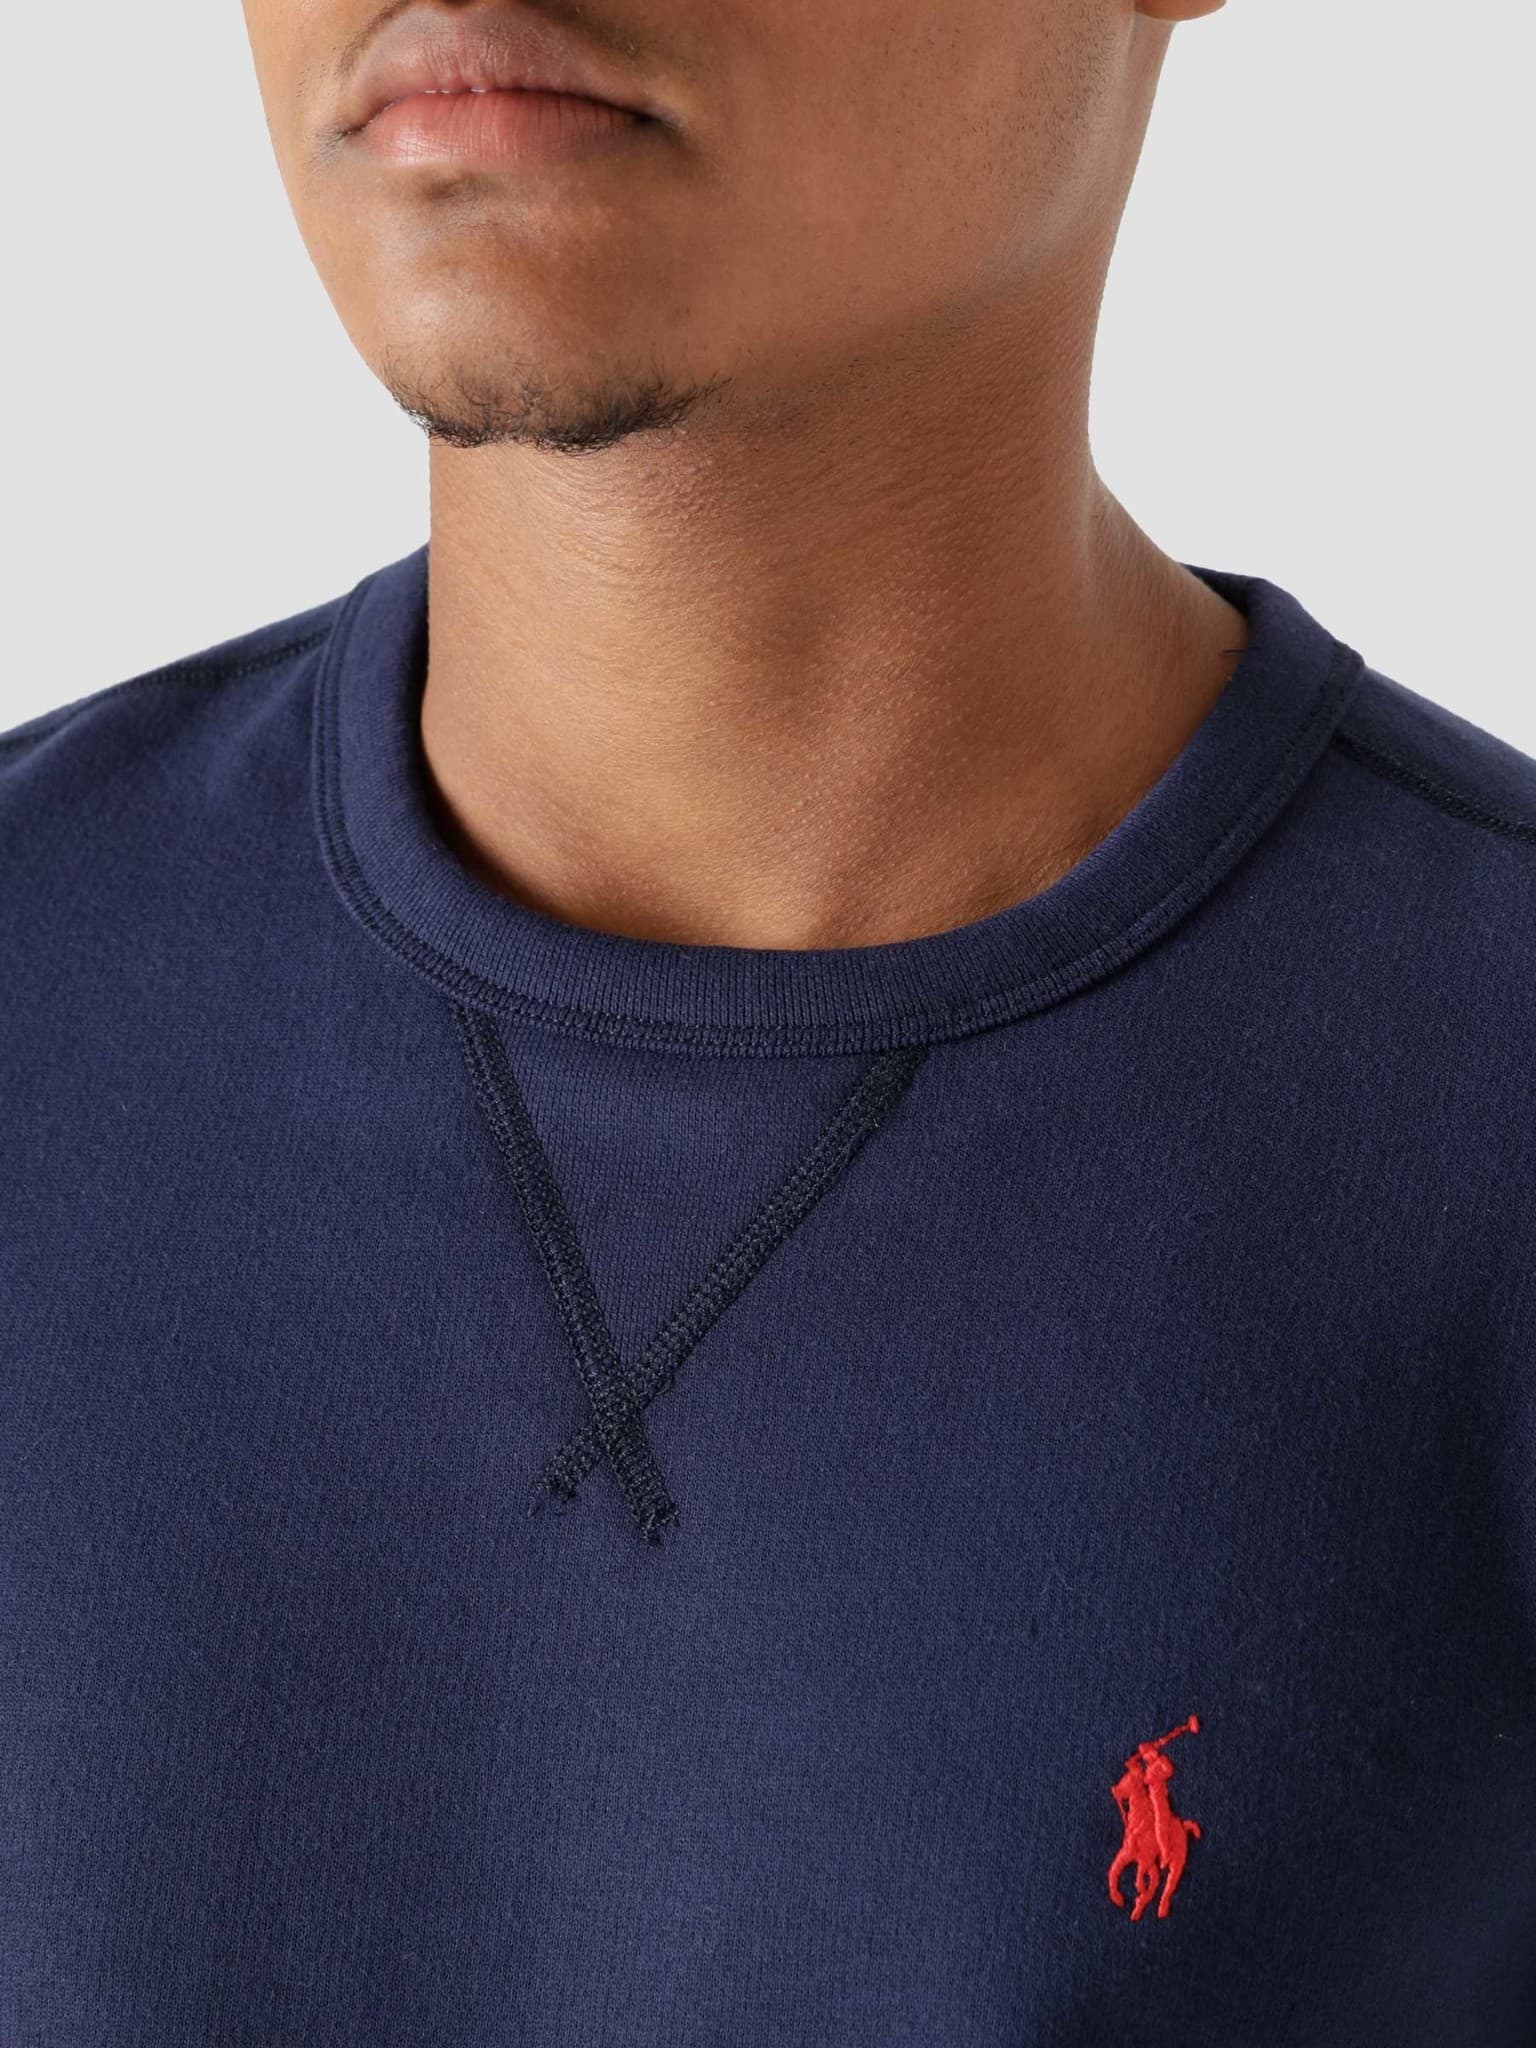 Longsleeve Knit Sweater Newport Navy-C3870 710766772019